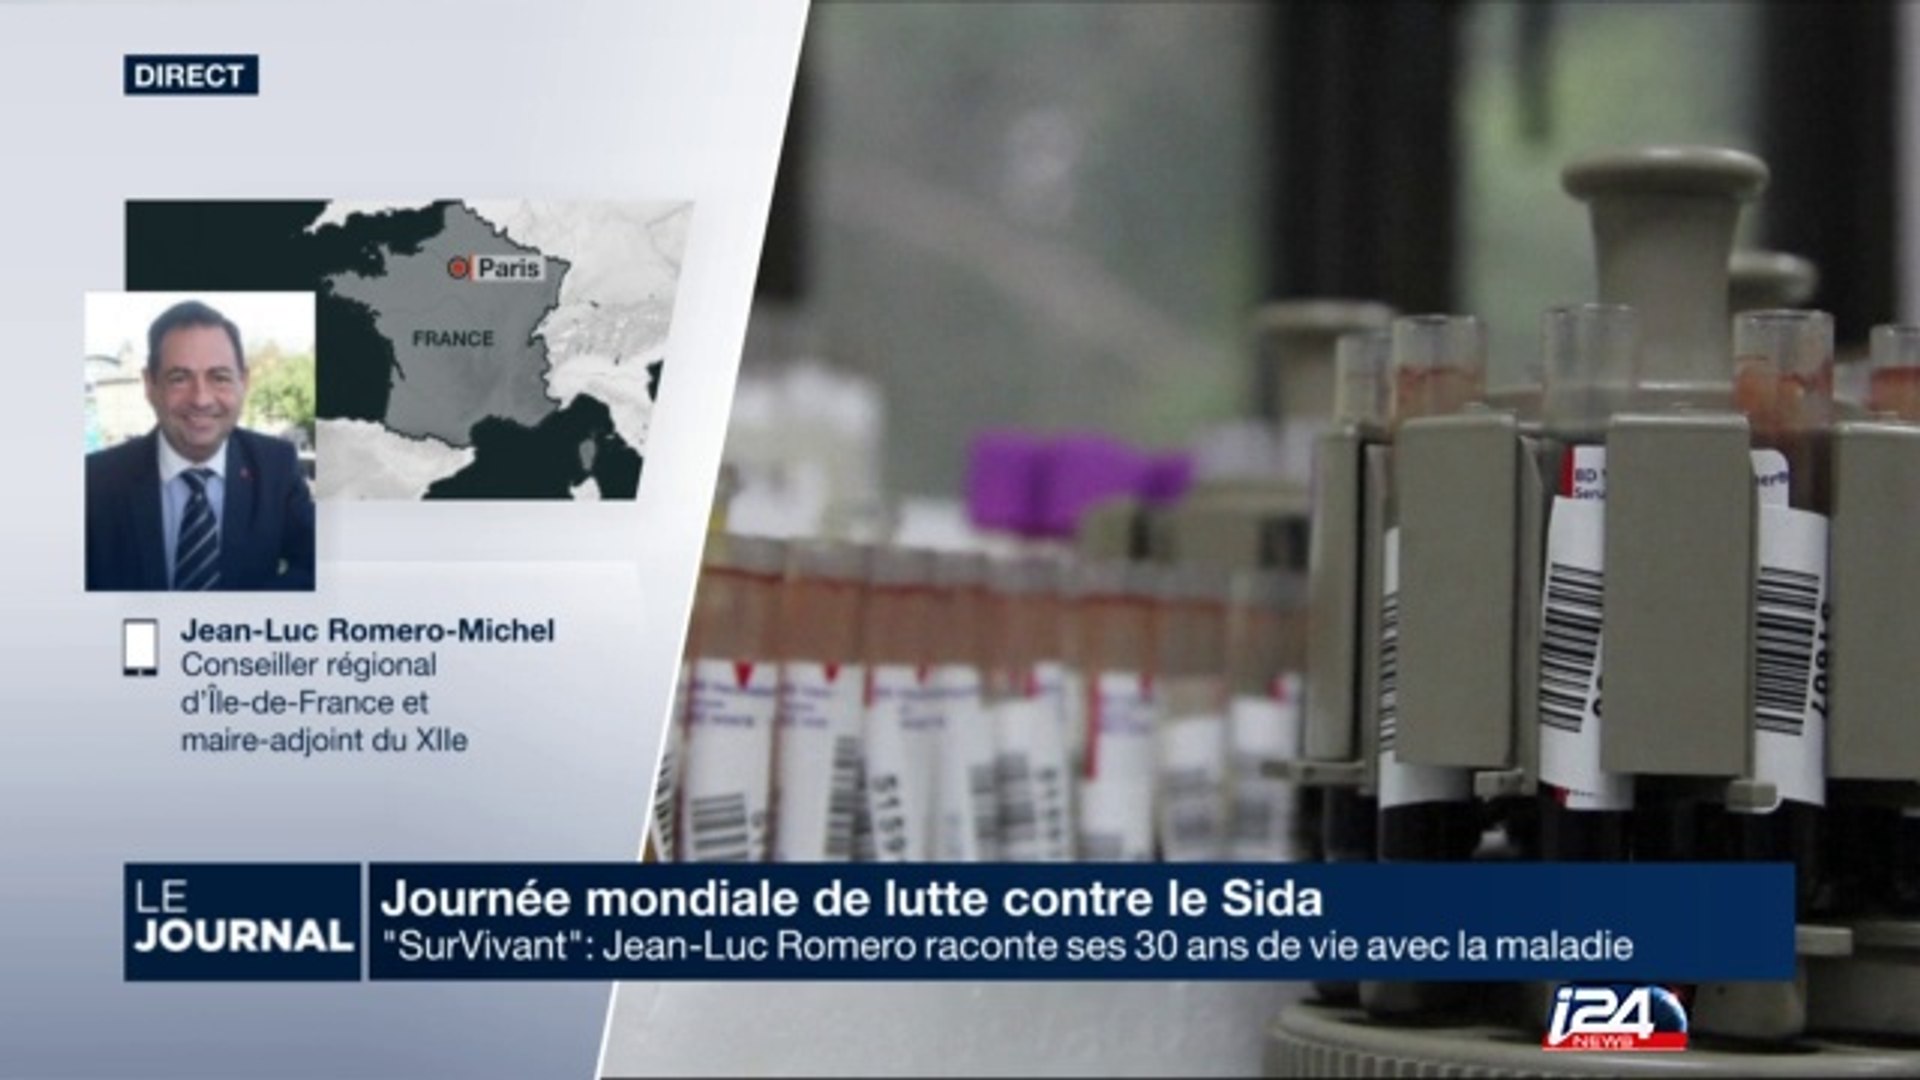 SurVivant": Jean-Luc Romero raconte ses 30 ans de vie avec le Sida - Vidéo  Dailymotion